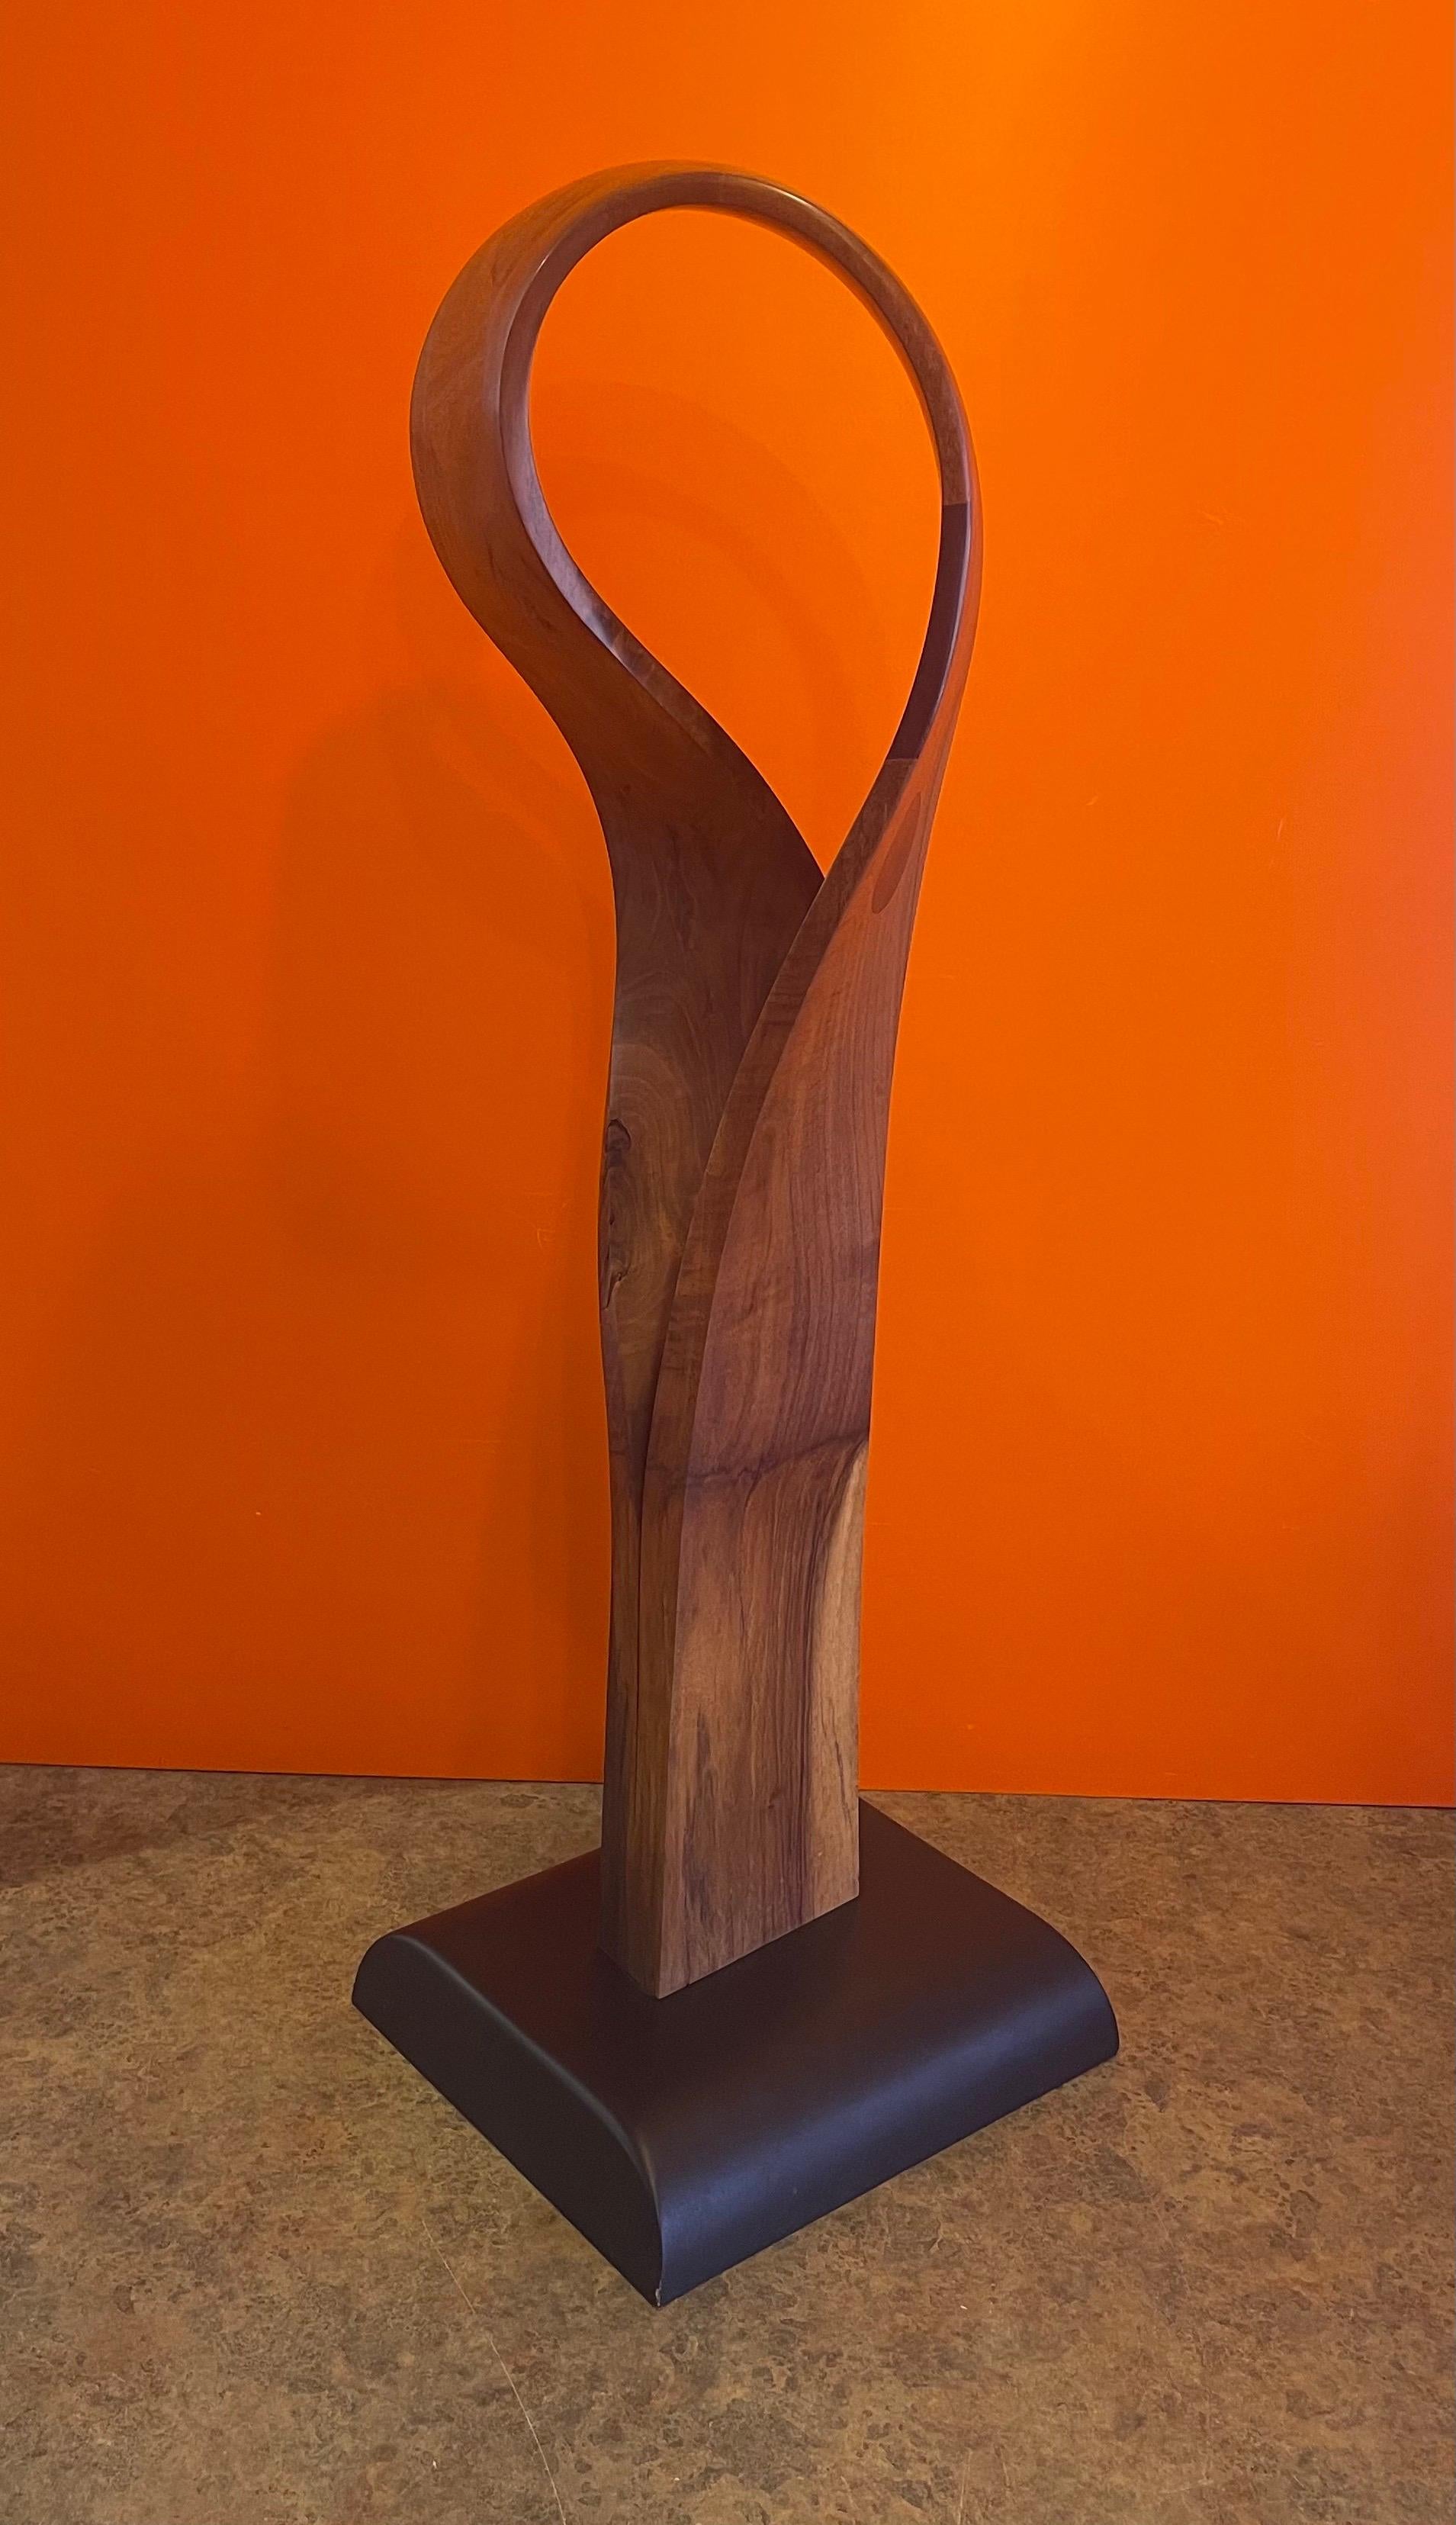 Magnifique sculpture abstraite de forme libre en bois incrusté, datant des années 1980. La pièce est assez spectaculaire avec des cercles incrustés sur un morceau de bois de ronce en forme de ruban sur une base noire de 11 